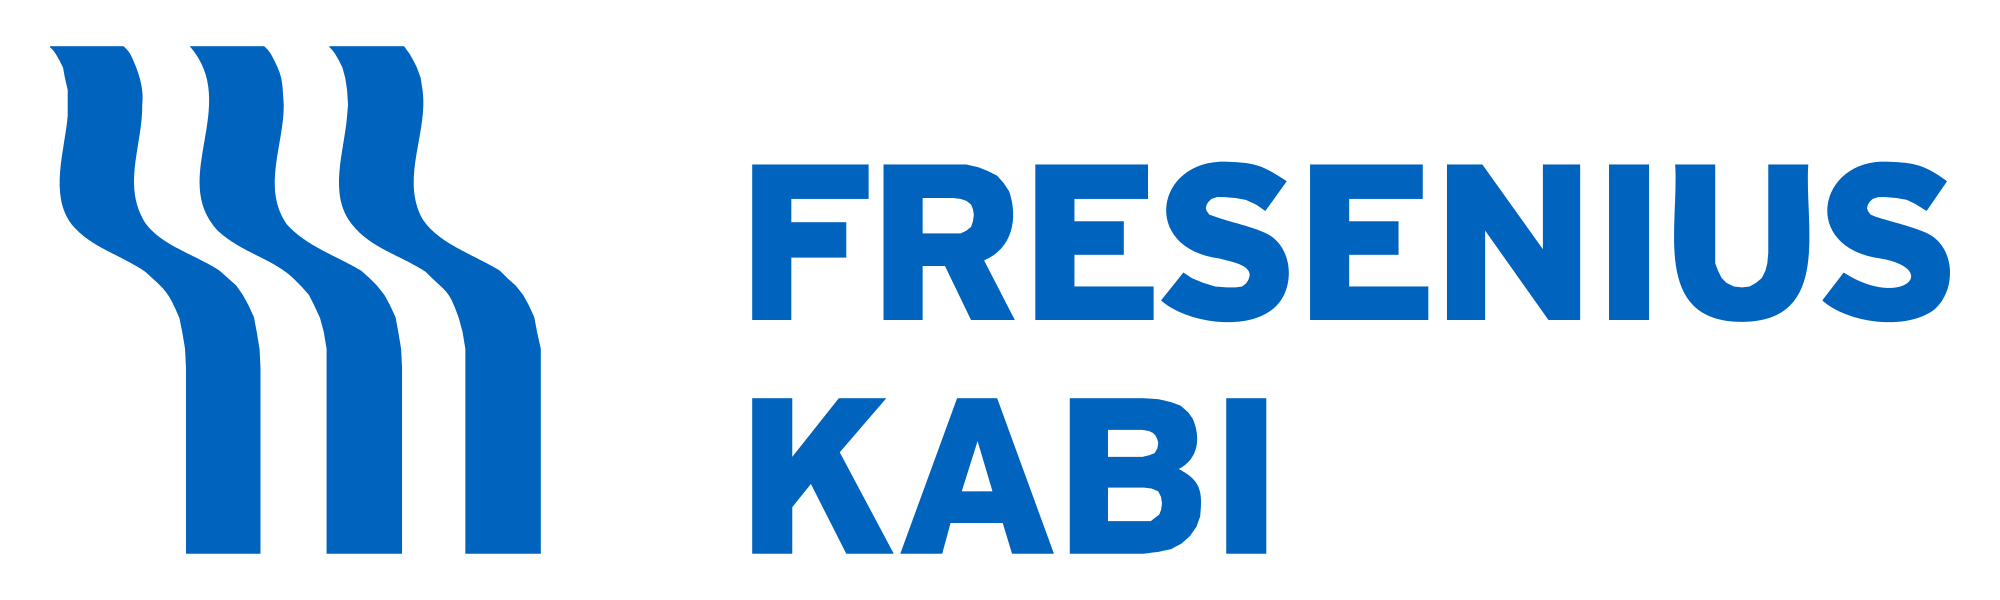 Fresenius Logo - File:Fresenius Kabi Logo.svg - Wikimedia Commons